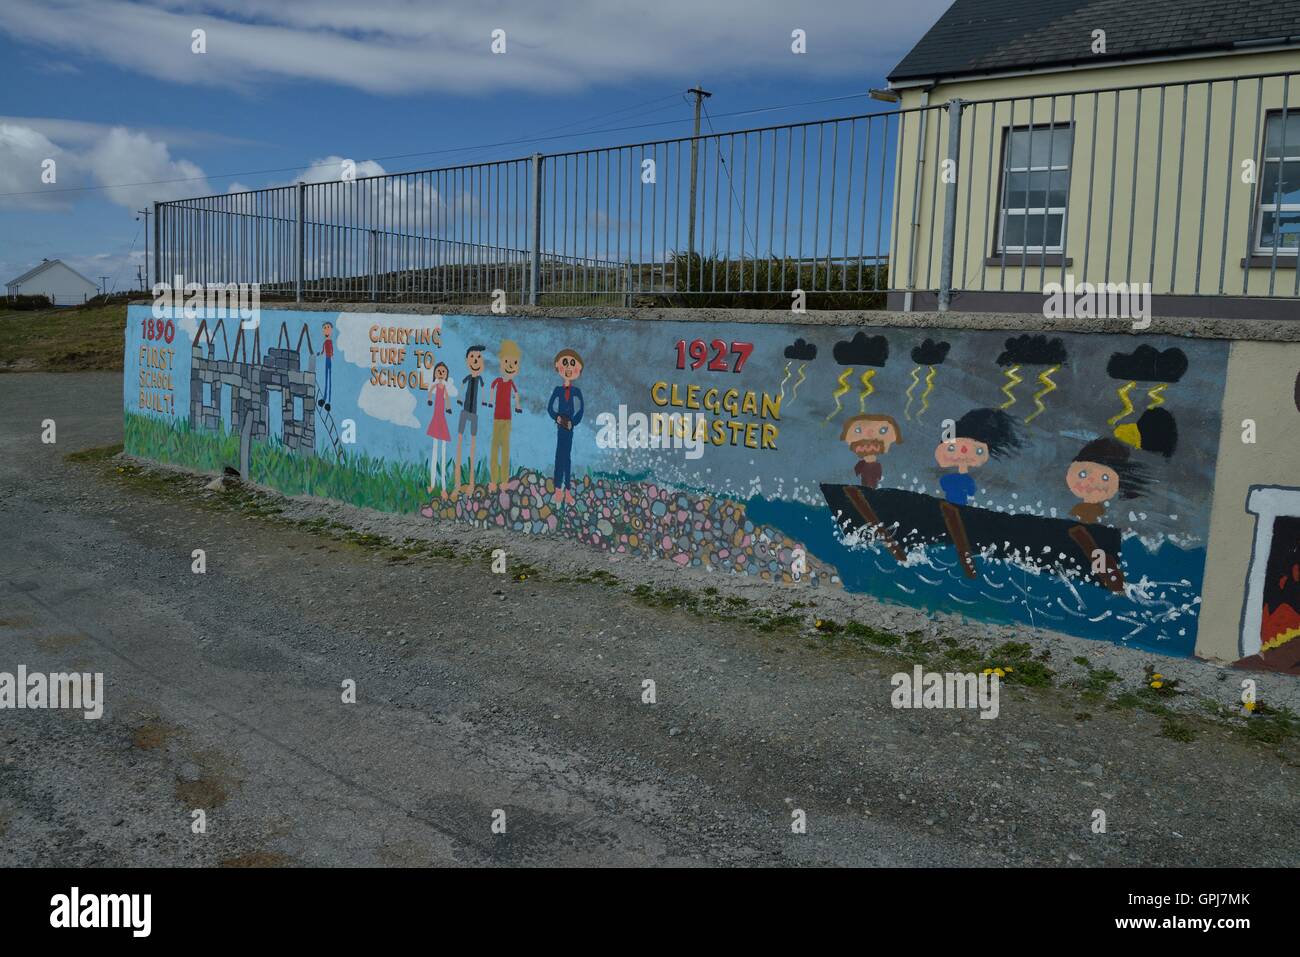 Inishbofin es una isla irlandesa en el Condado de Galway y a 8 km de la costa de Connemara. - Île irlandaise située dans le comté de Galway, Iuna isla irlandesa. Foto de stock